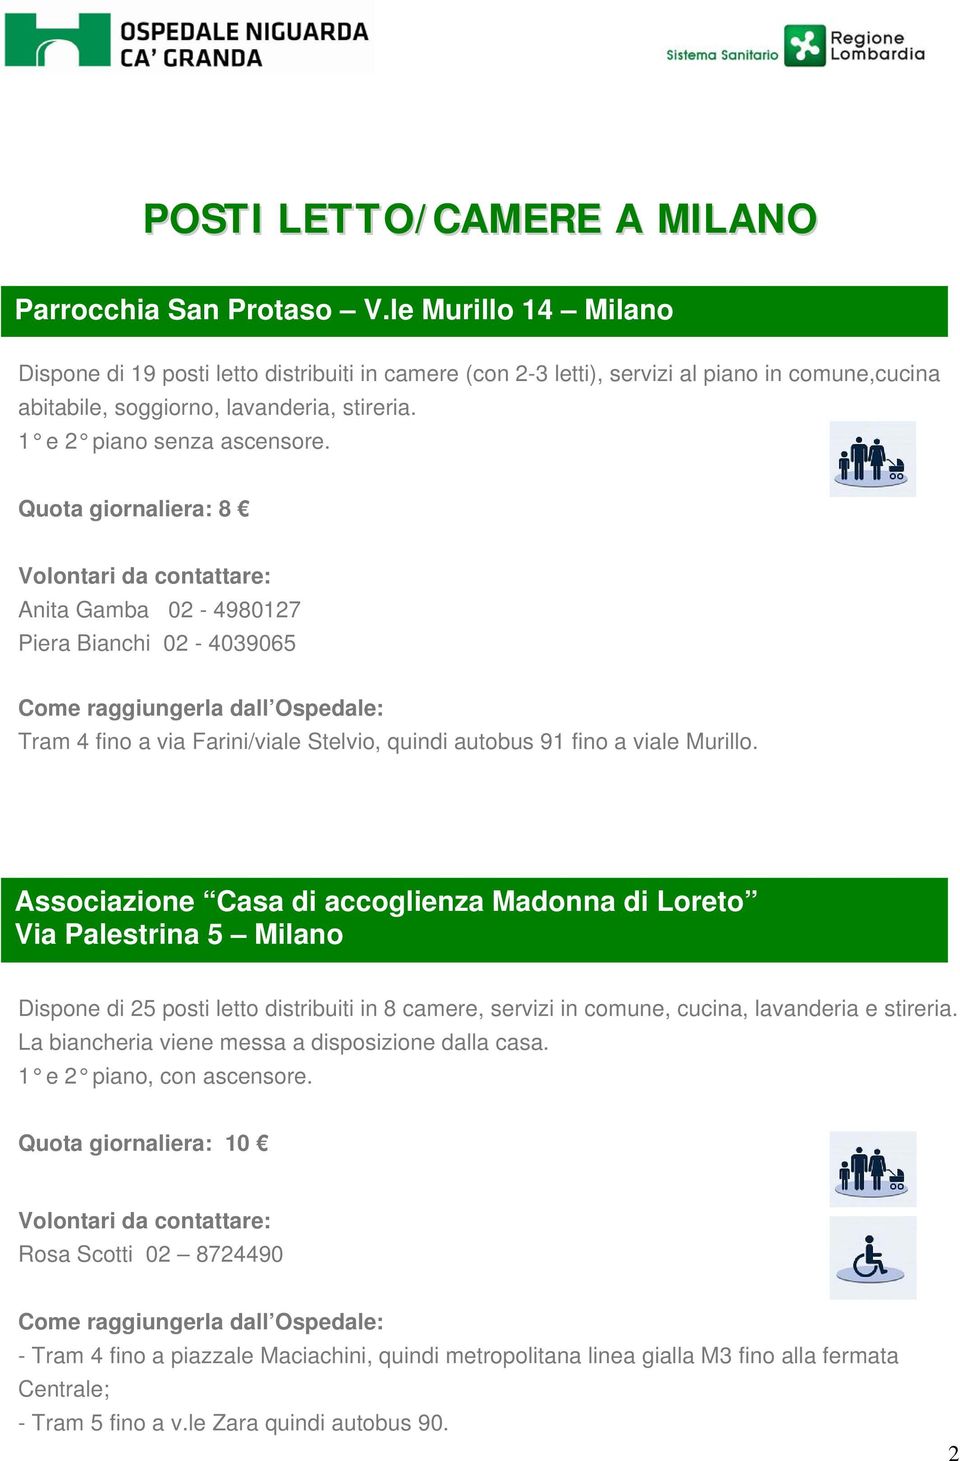 Quota giornaliera: 8 Anita Gamba 02-4980127 Piera Bianchi 02-4039065 Tram 4 fino a via Farini/viale Stelvio, quindi autobus 91 fino a viale Murillo.